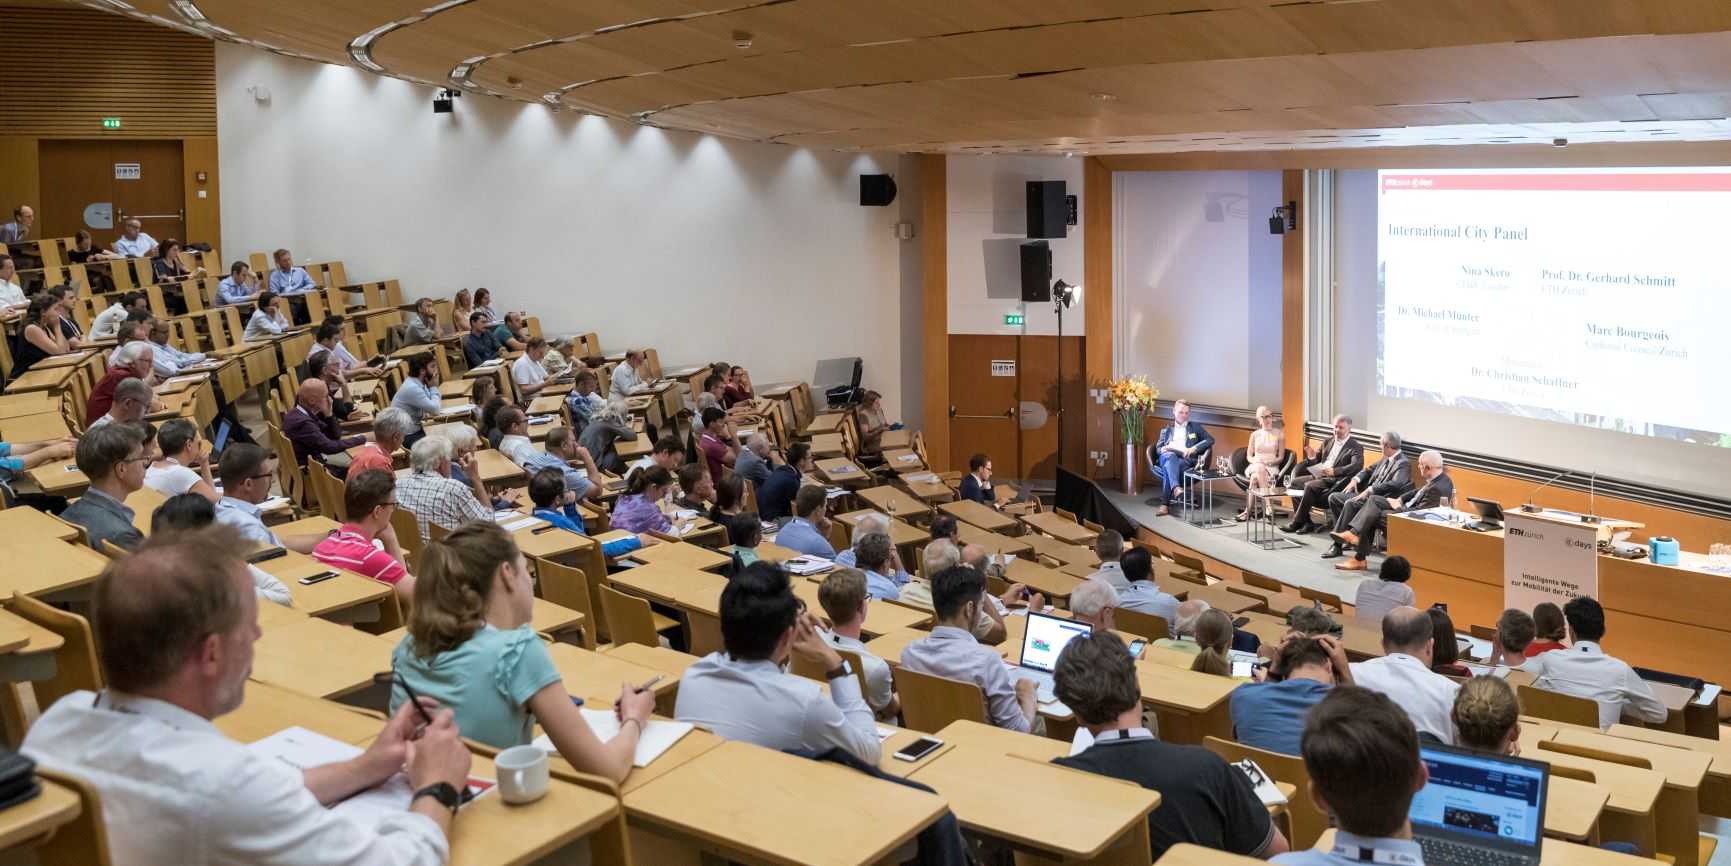 Das Bild zeigt einen Vorlesungssaal an der ETH, in dem zahlreiche Menschen sitzen und einer Podiumsdiskussion mit fünf Podiumsgästen zuhören.